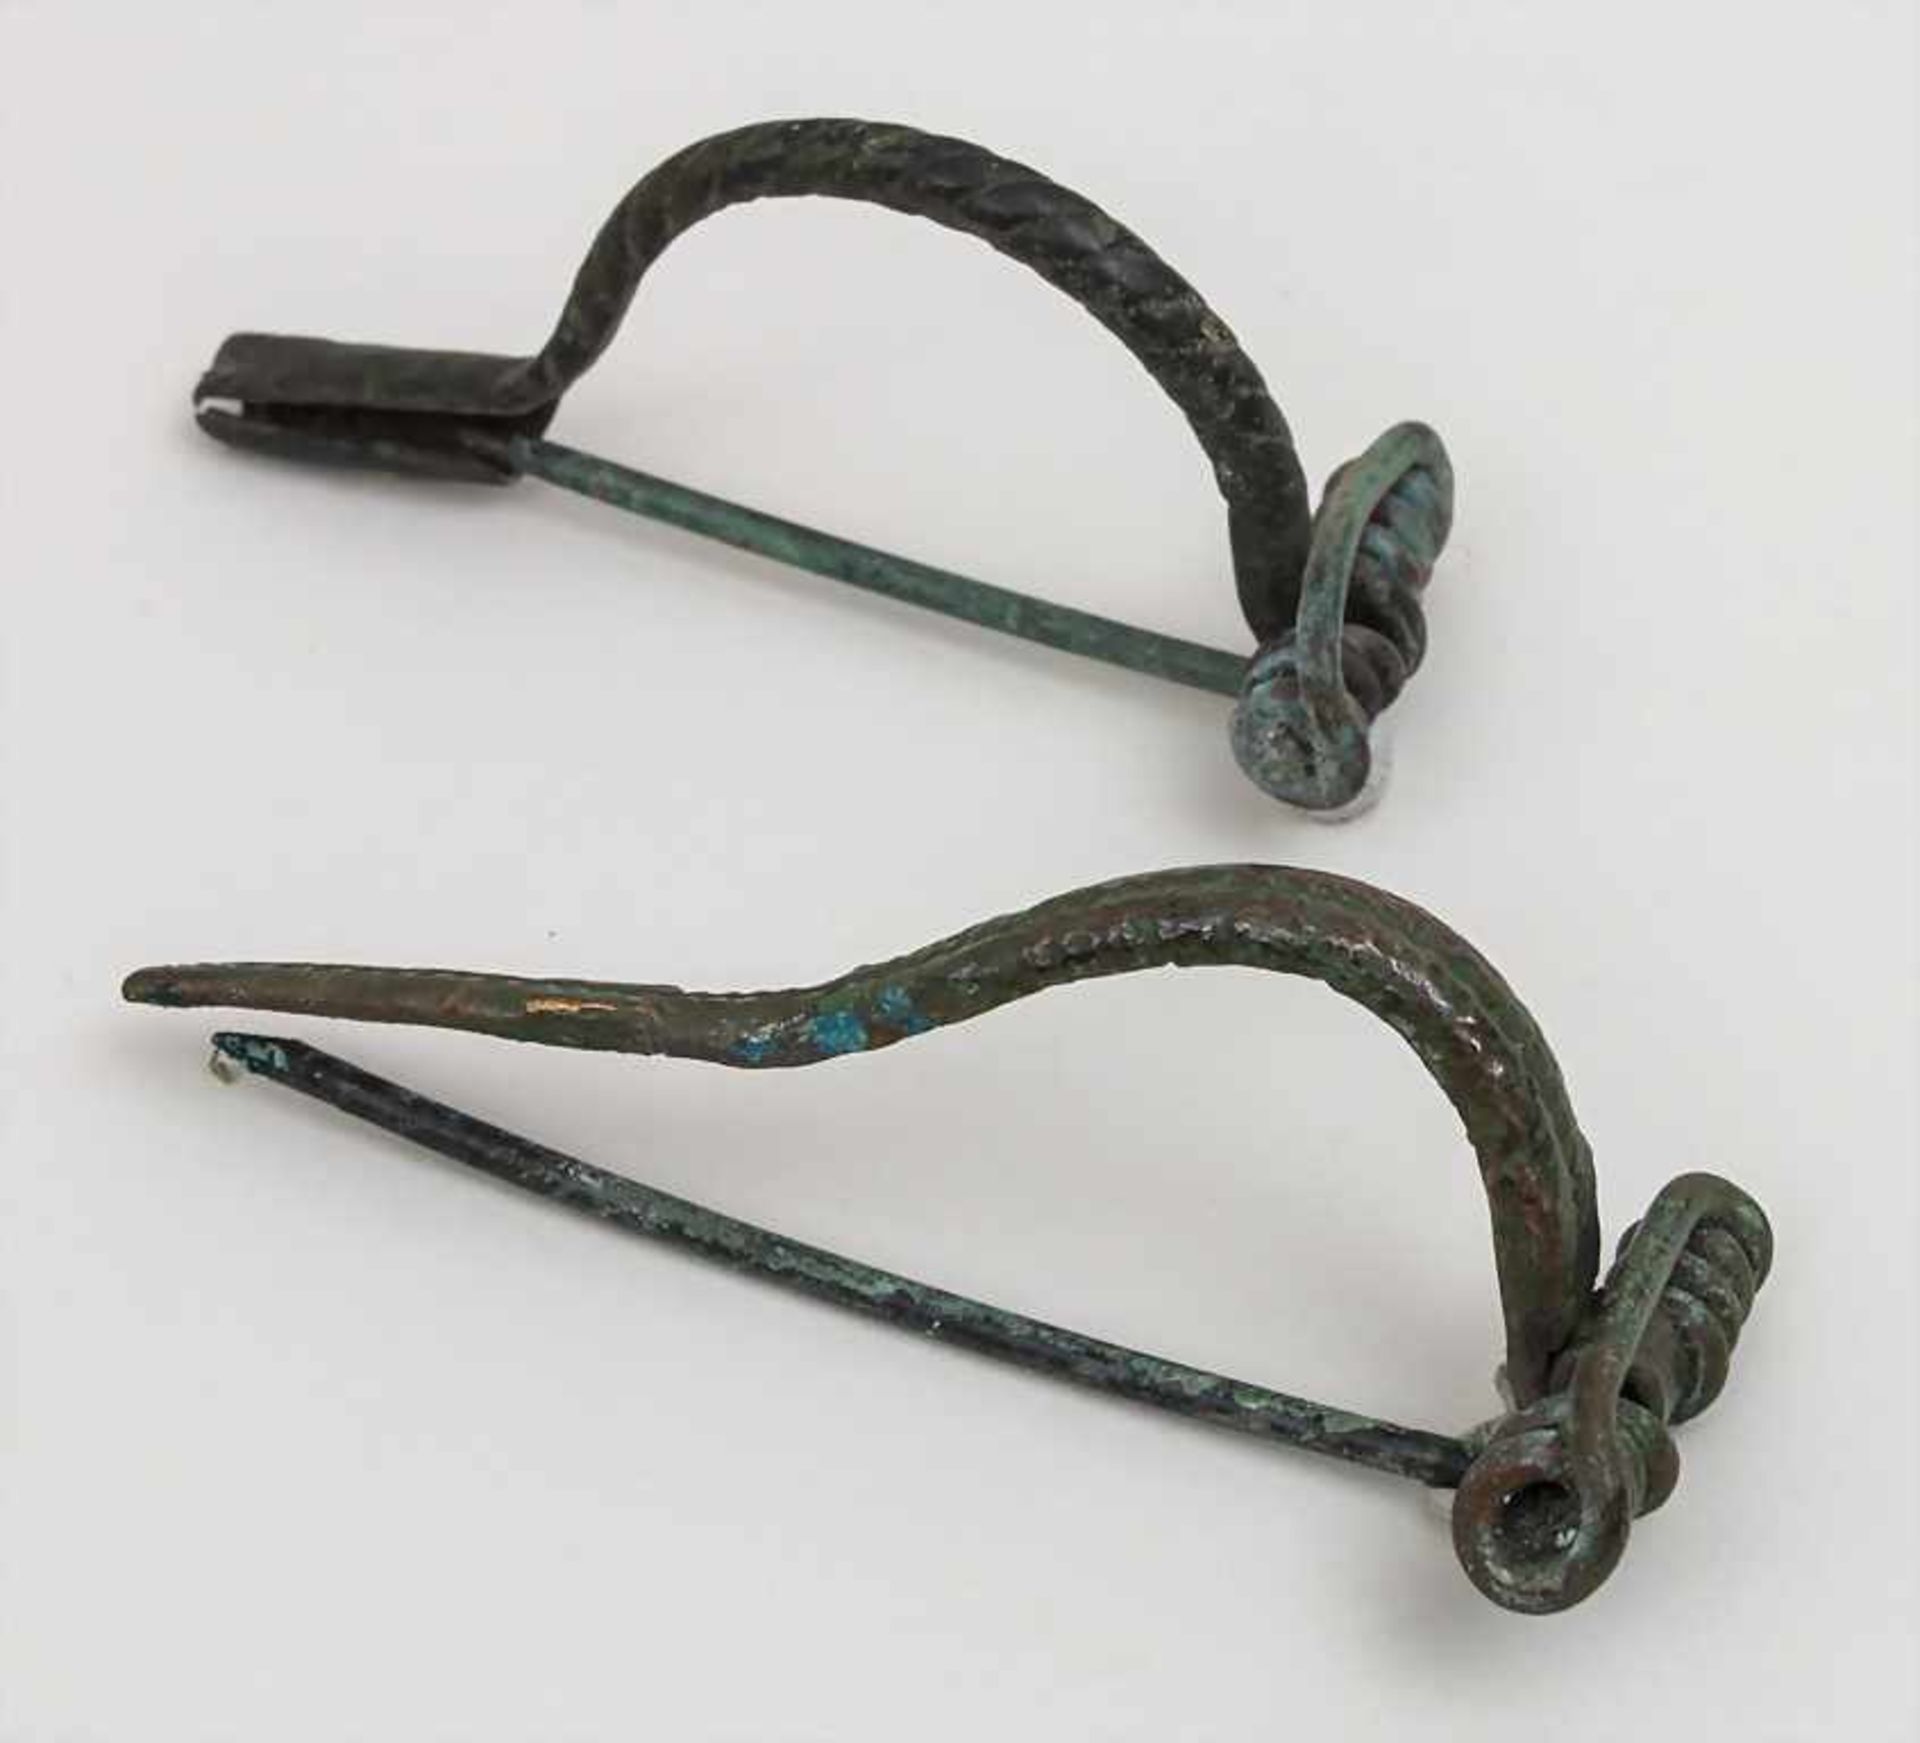 2 keltische Bogenfibeln / 2 Celtic bow fibulae Länge: 6,8 u. 6,2 cm,Herkunft: aus alter Sammlung+